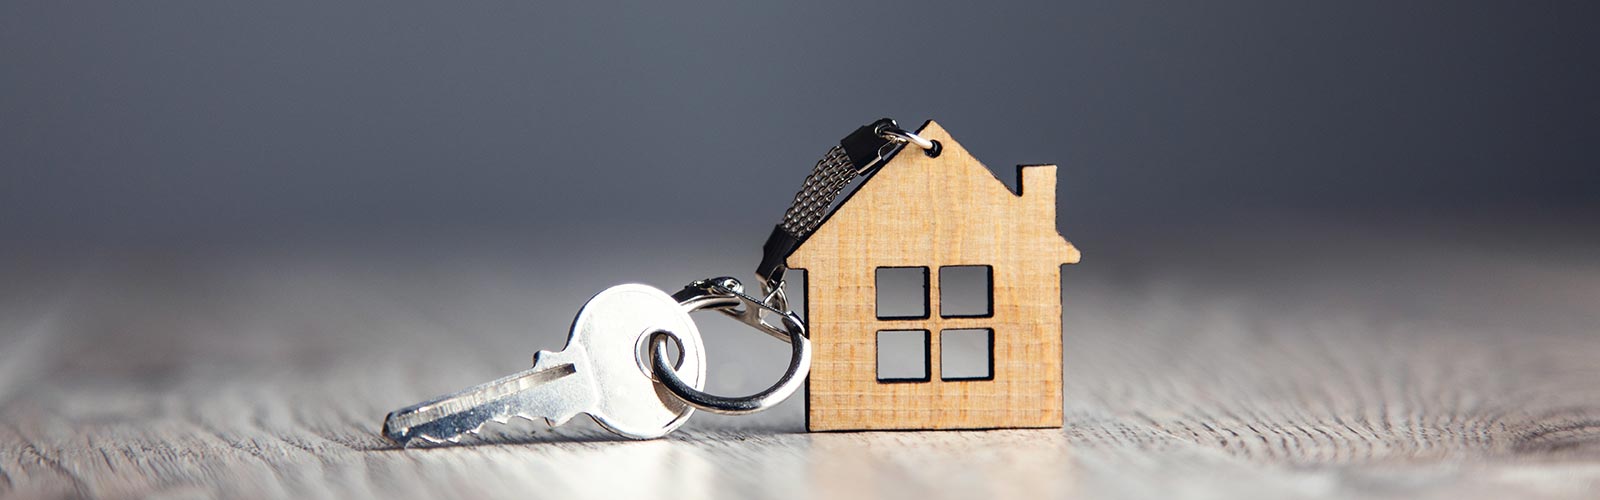 Immobilienverkauf ohne Makler – wann ist es eine gute Idee?